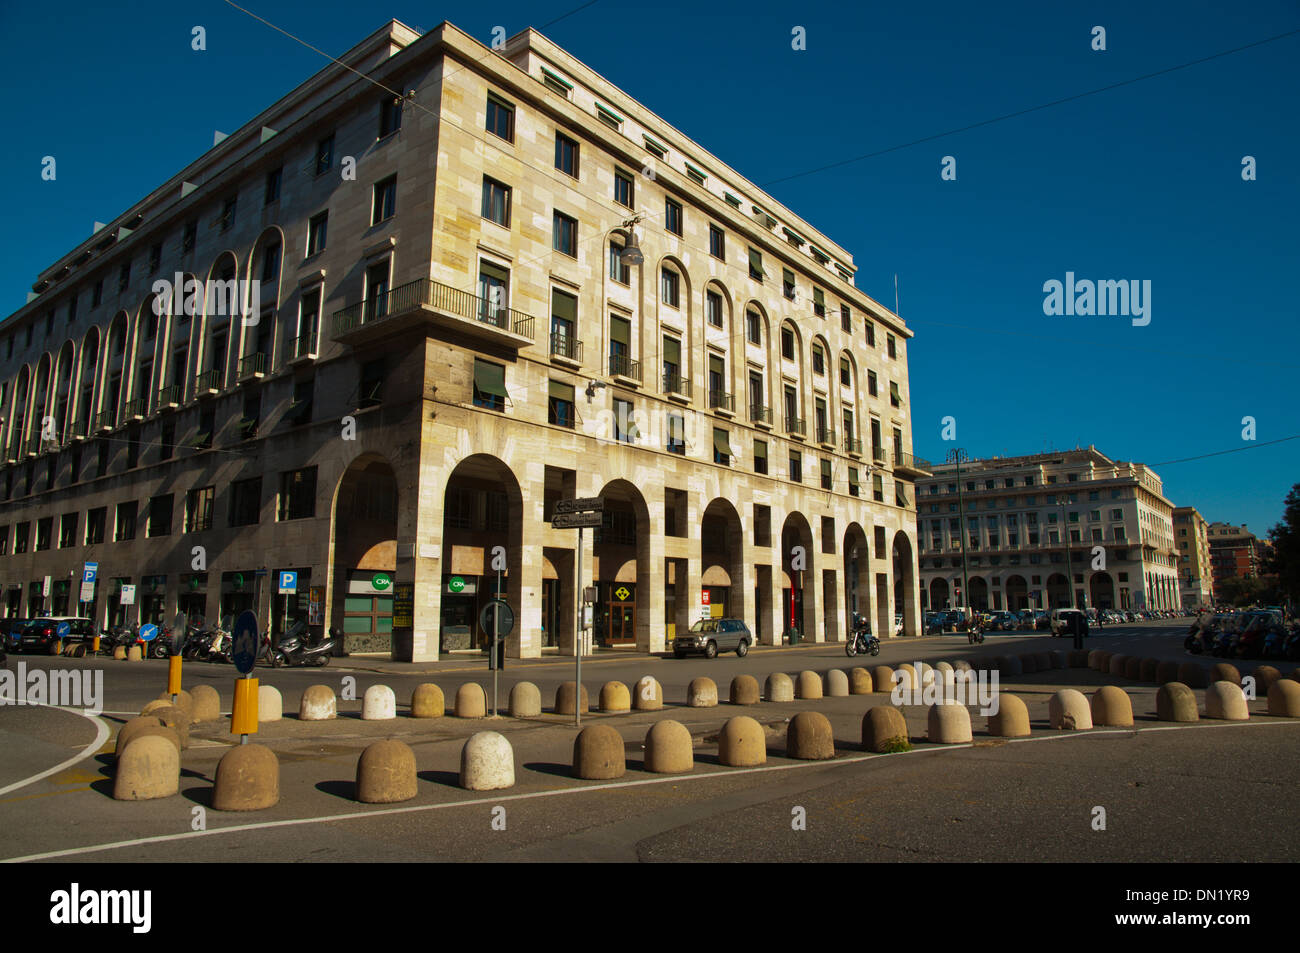 Fascist era architecture from the 1930s Piazza della Vittoria square central Genoa Liguria region Italy Europe Stock Photo